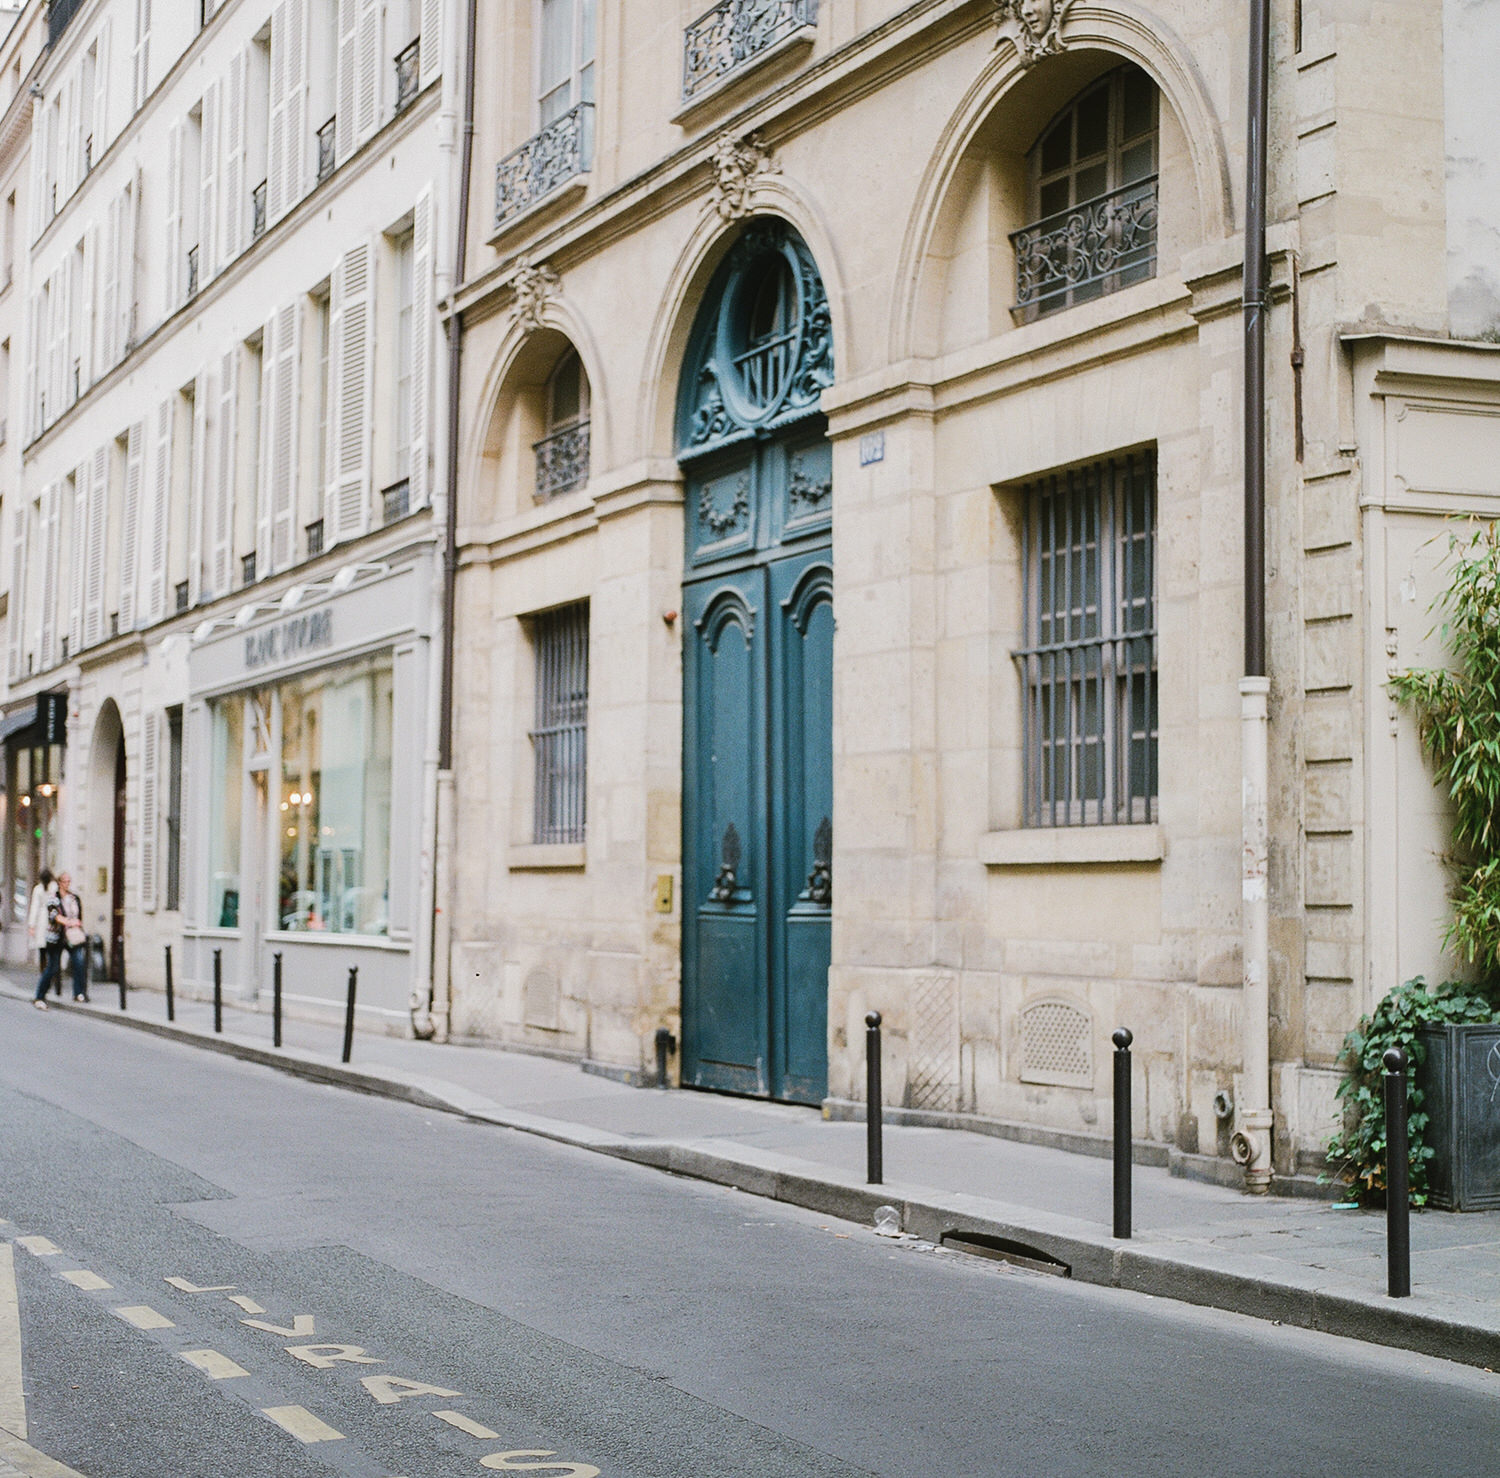 street in Paris France. Teal blue door. Photo by Judith Rae.